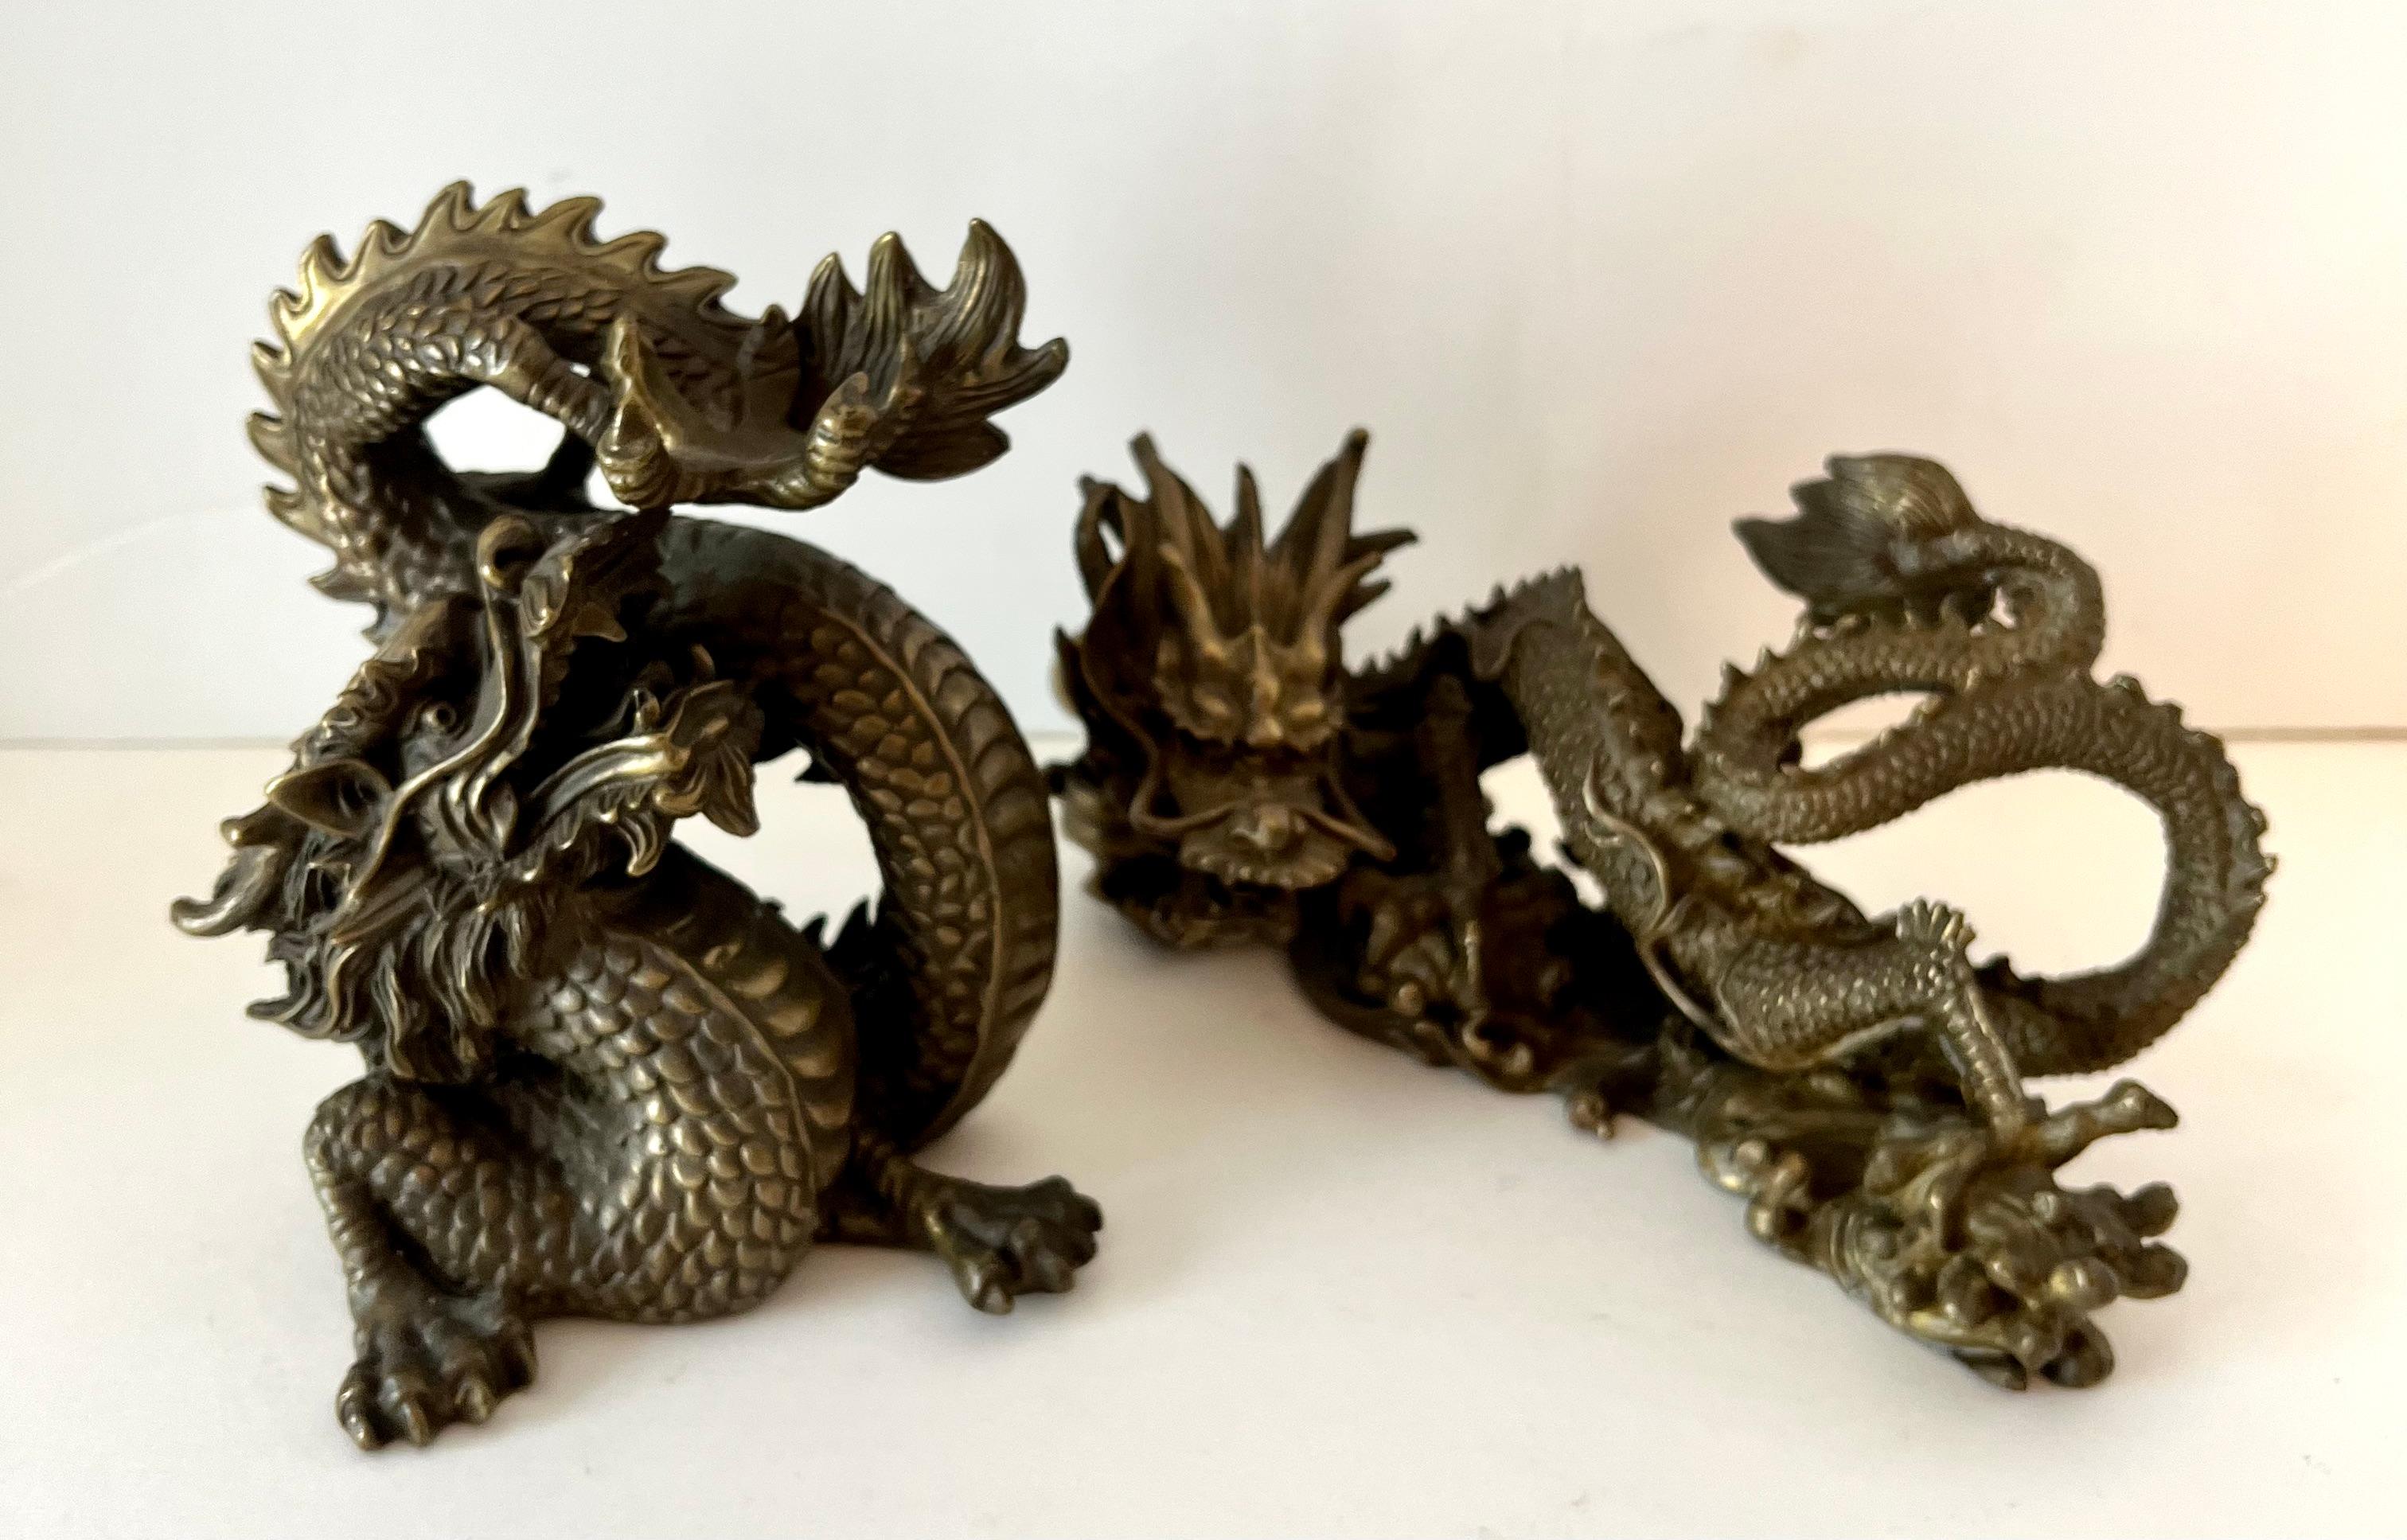 Ein Paar Dragons - das Paar ist sehr schön und gut gemacht.  Mit einem Gewicht von jeweils etwa 2,5 Pfund sind sie nicht nur dekorativ, sondern können auch als Buchstützen oder Briefbeschwerer verwendet werden.

eine Maßnahme:  3.5